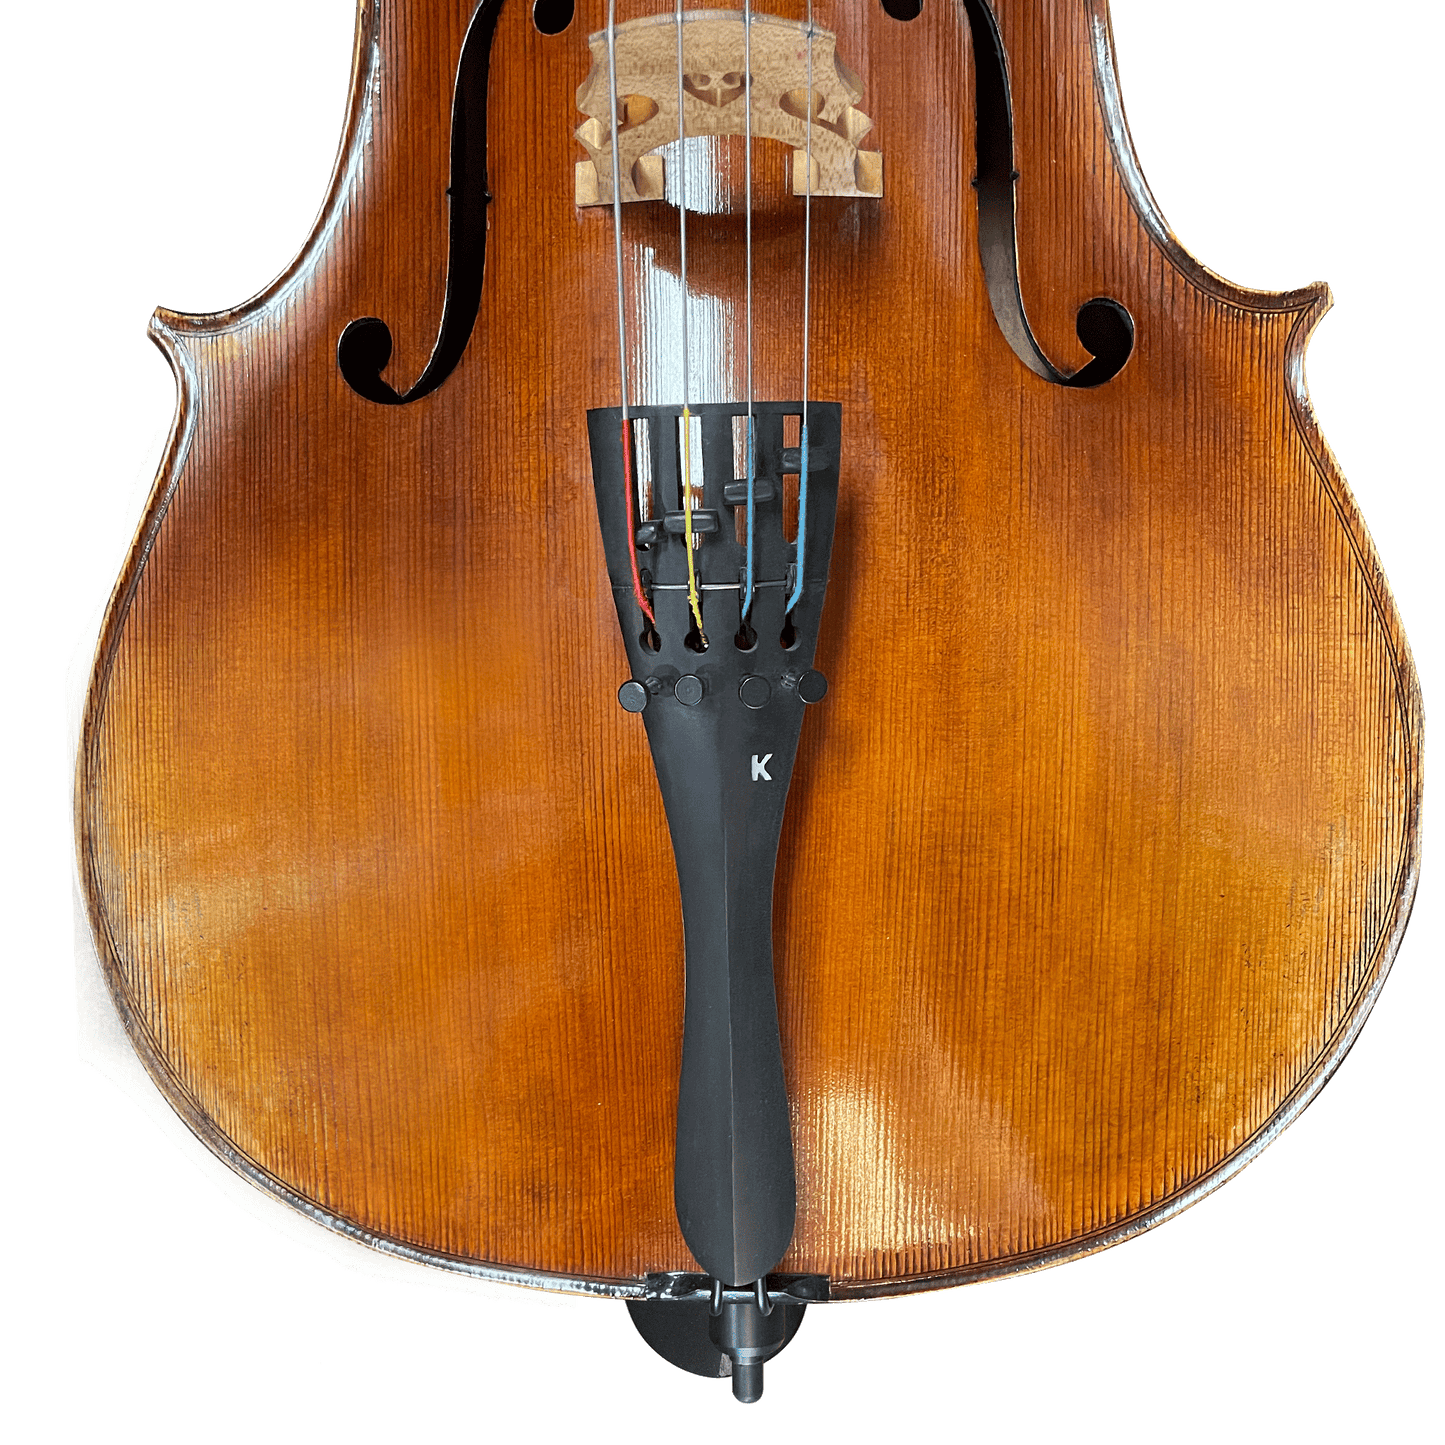 Kolstein Ebony Cello Adjustable Tailpiece